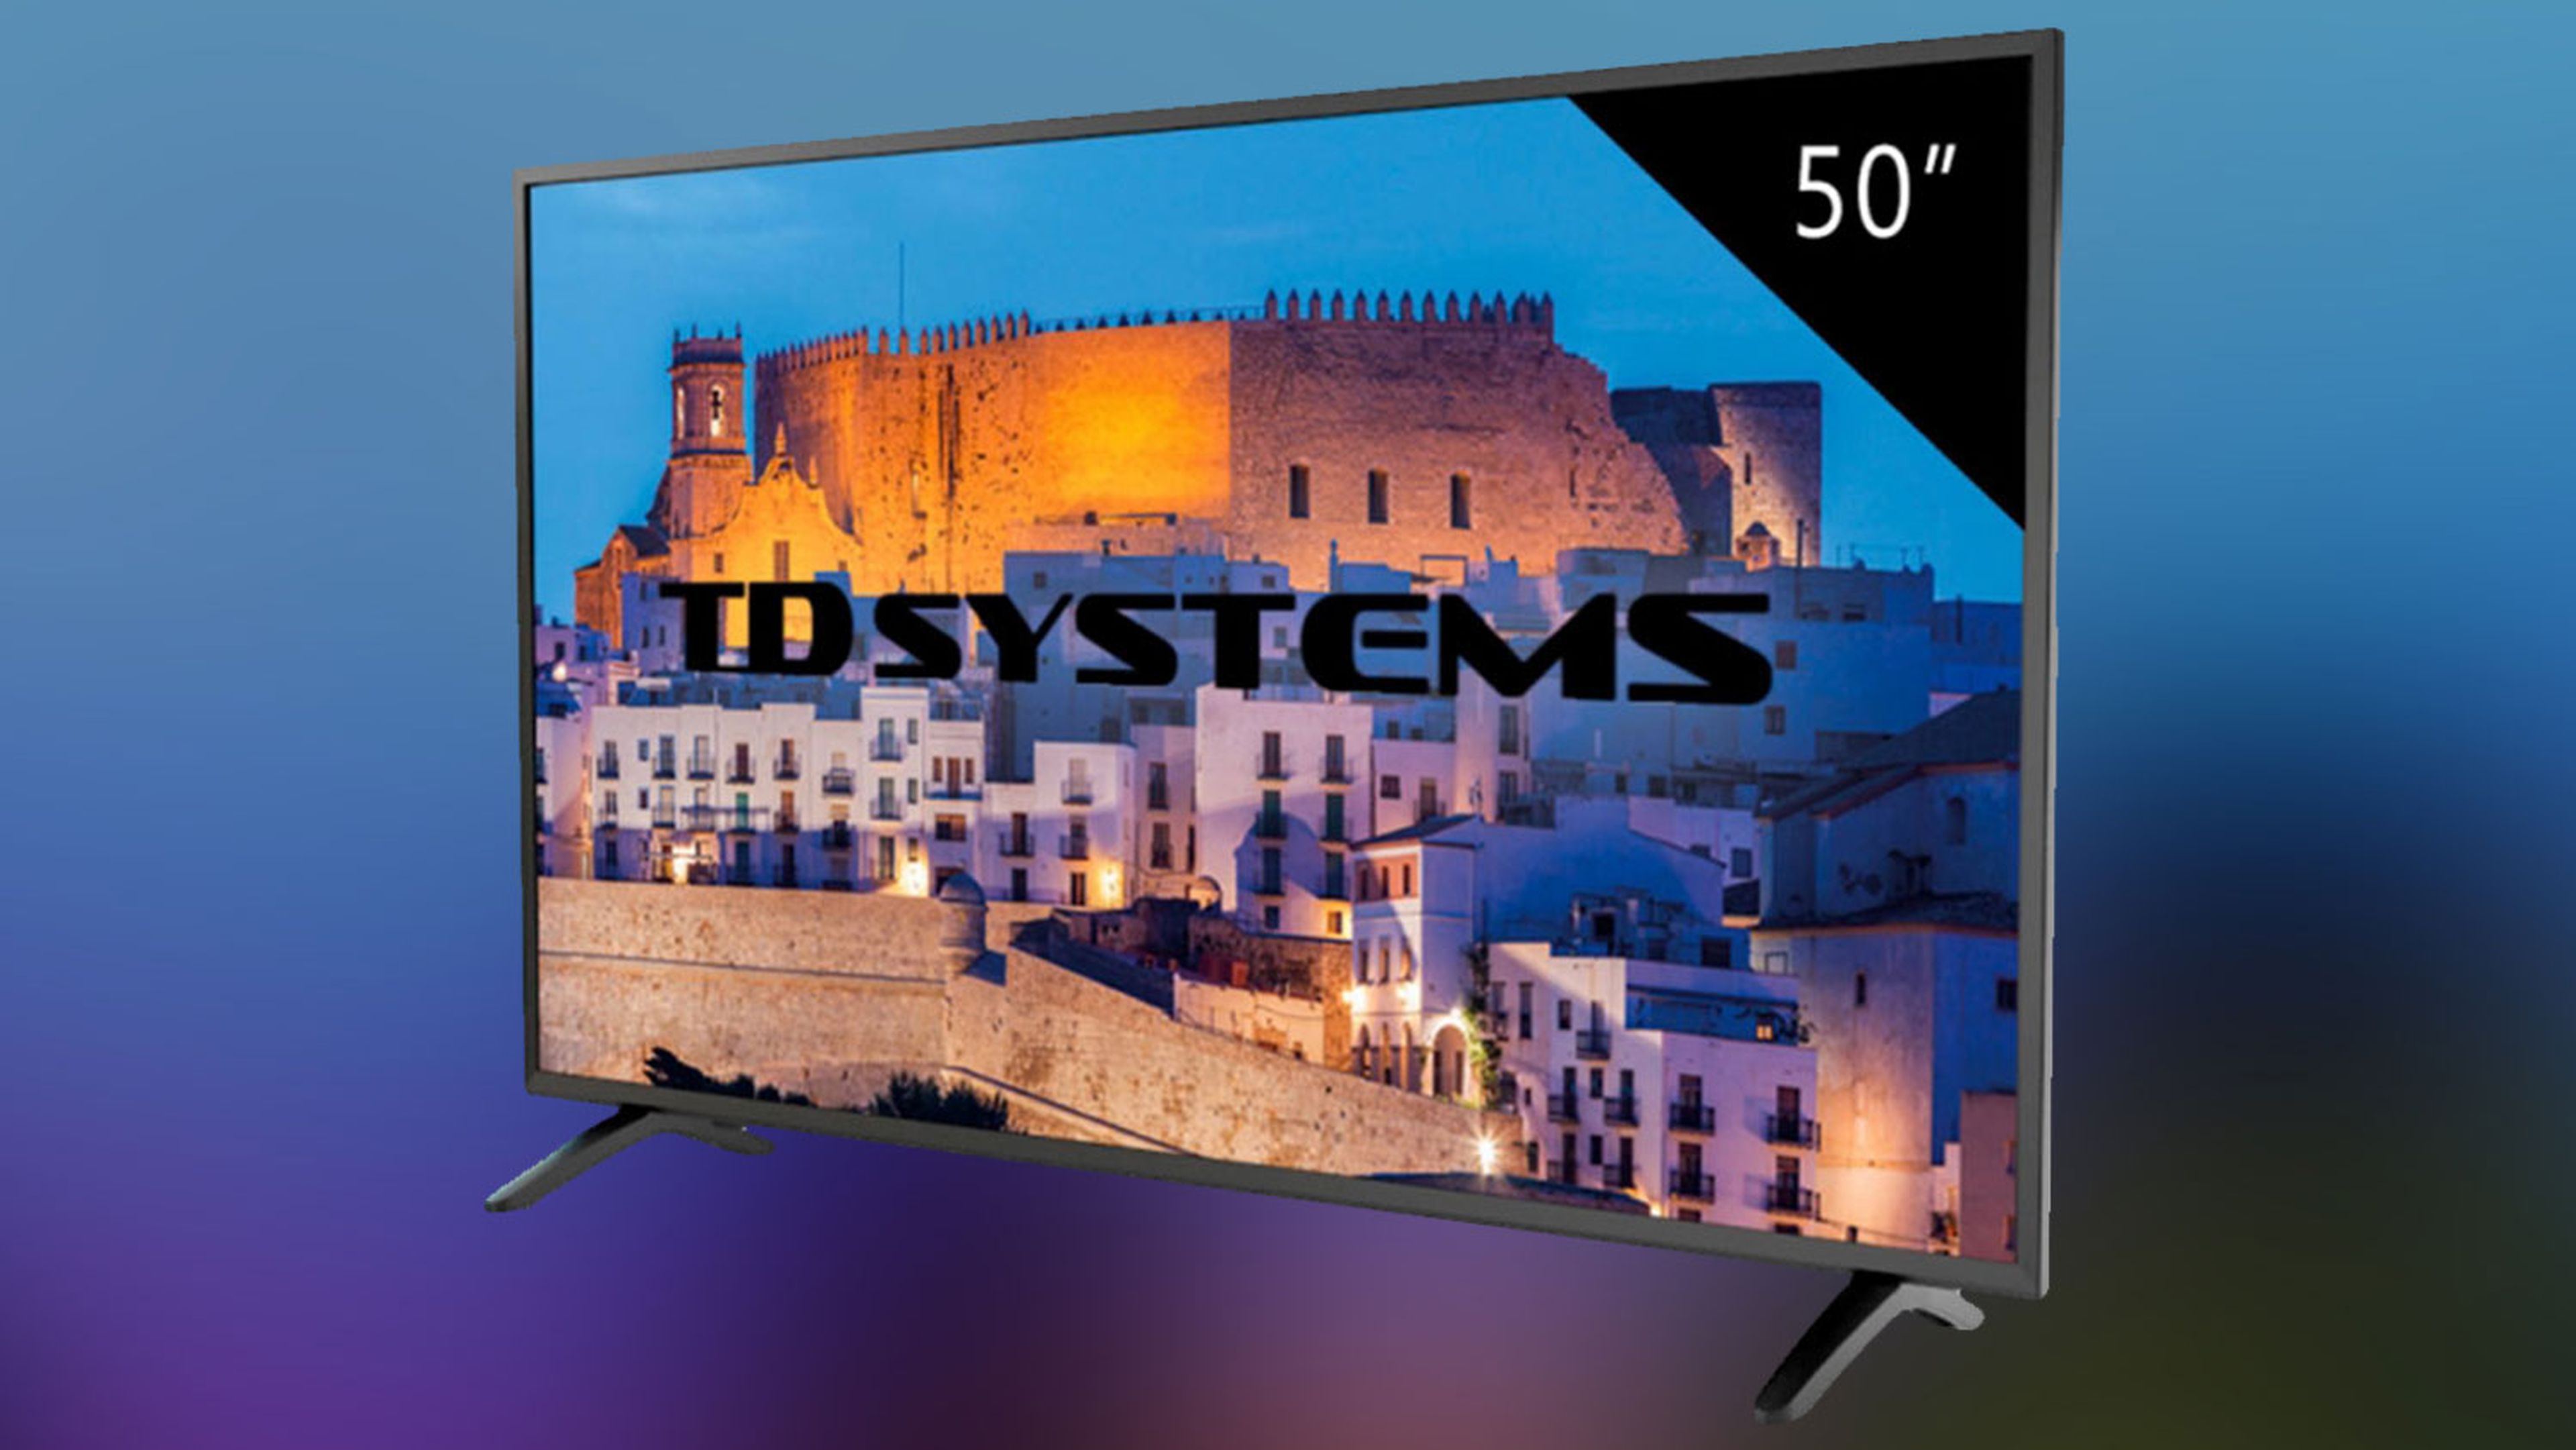 TD Systems, la marca española de los televisores HD por menos de